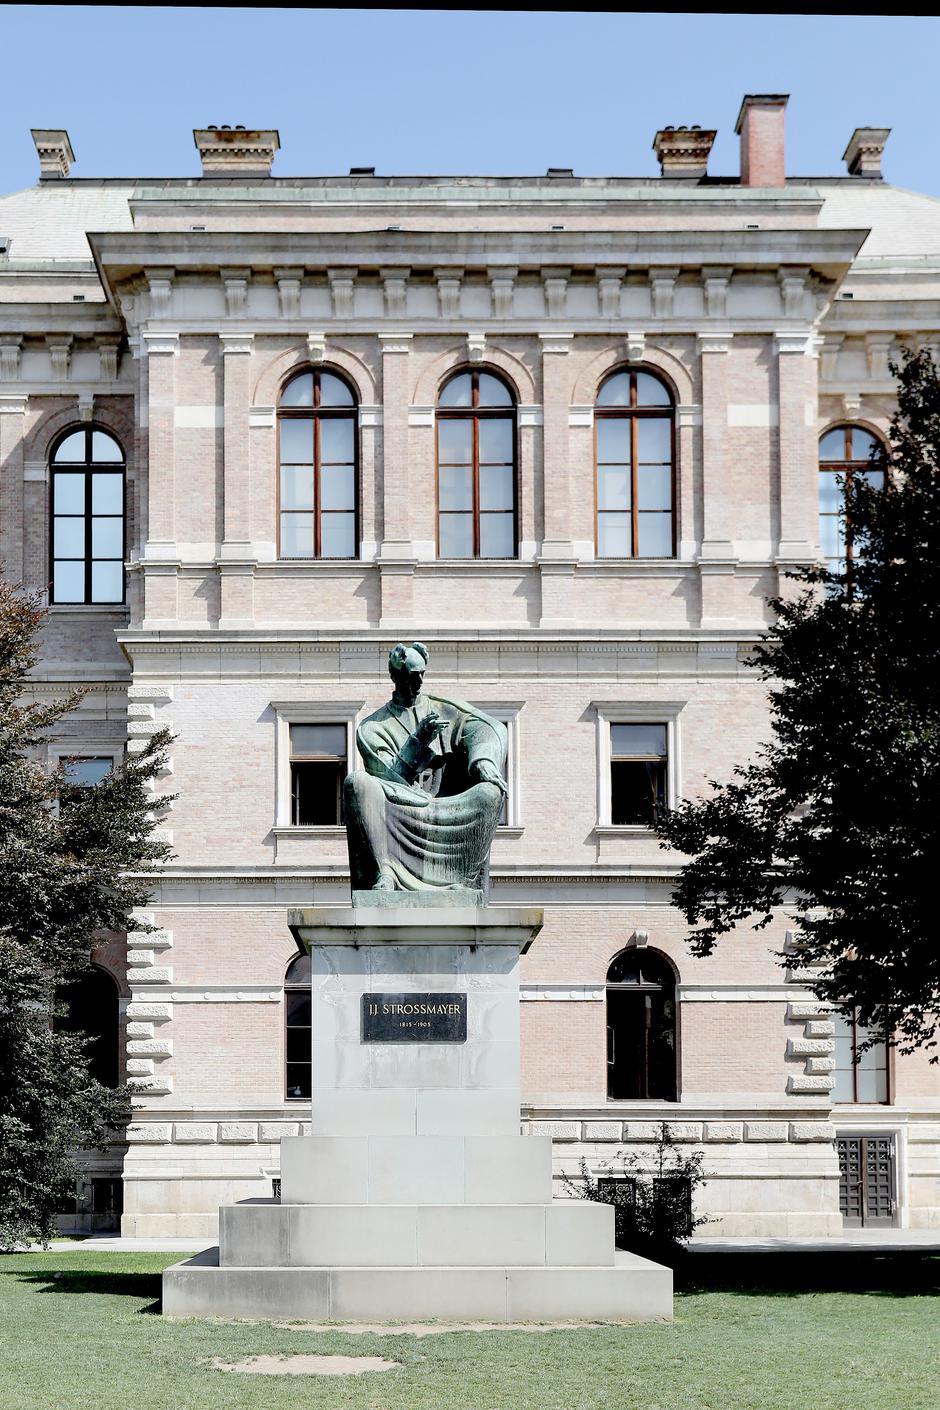 Zgrada Hrvatske akademije znanosti i umjetnosti